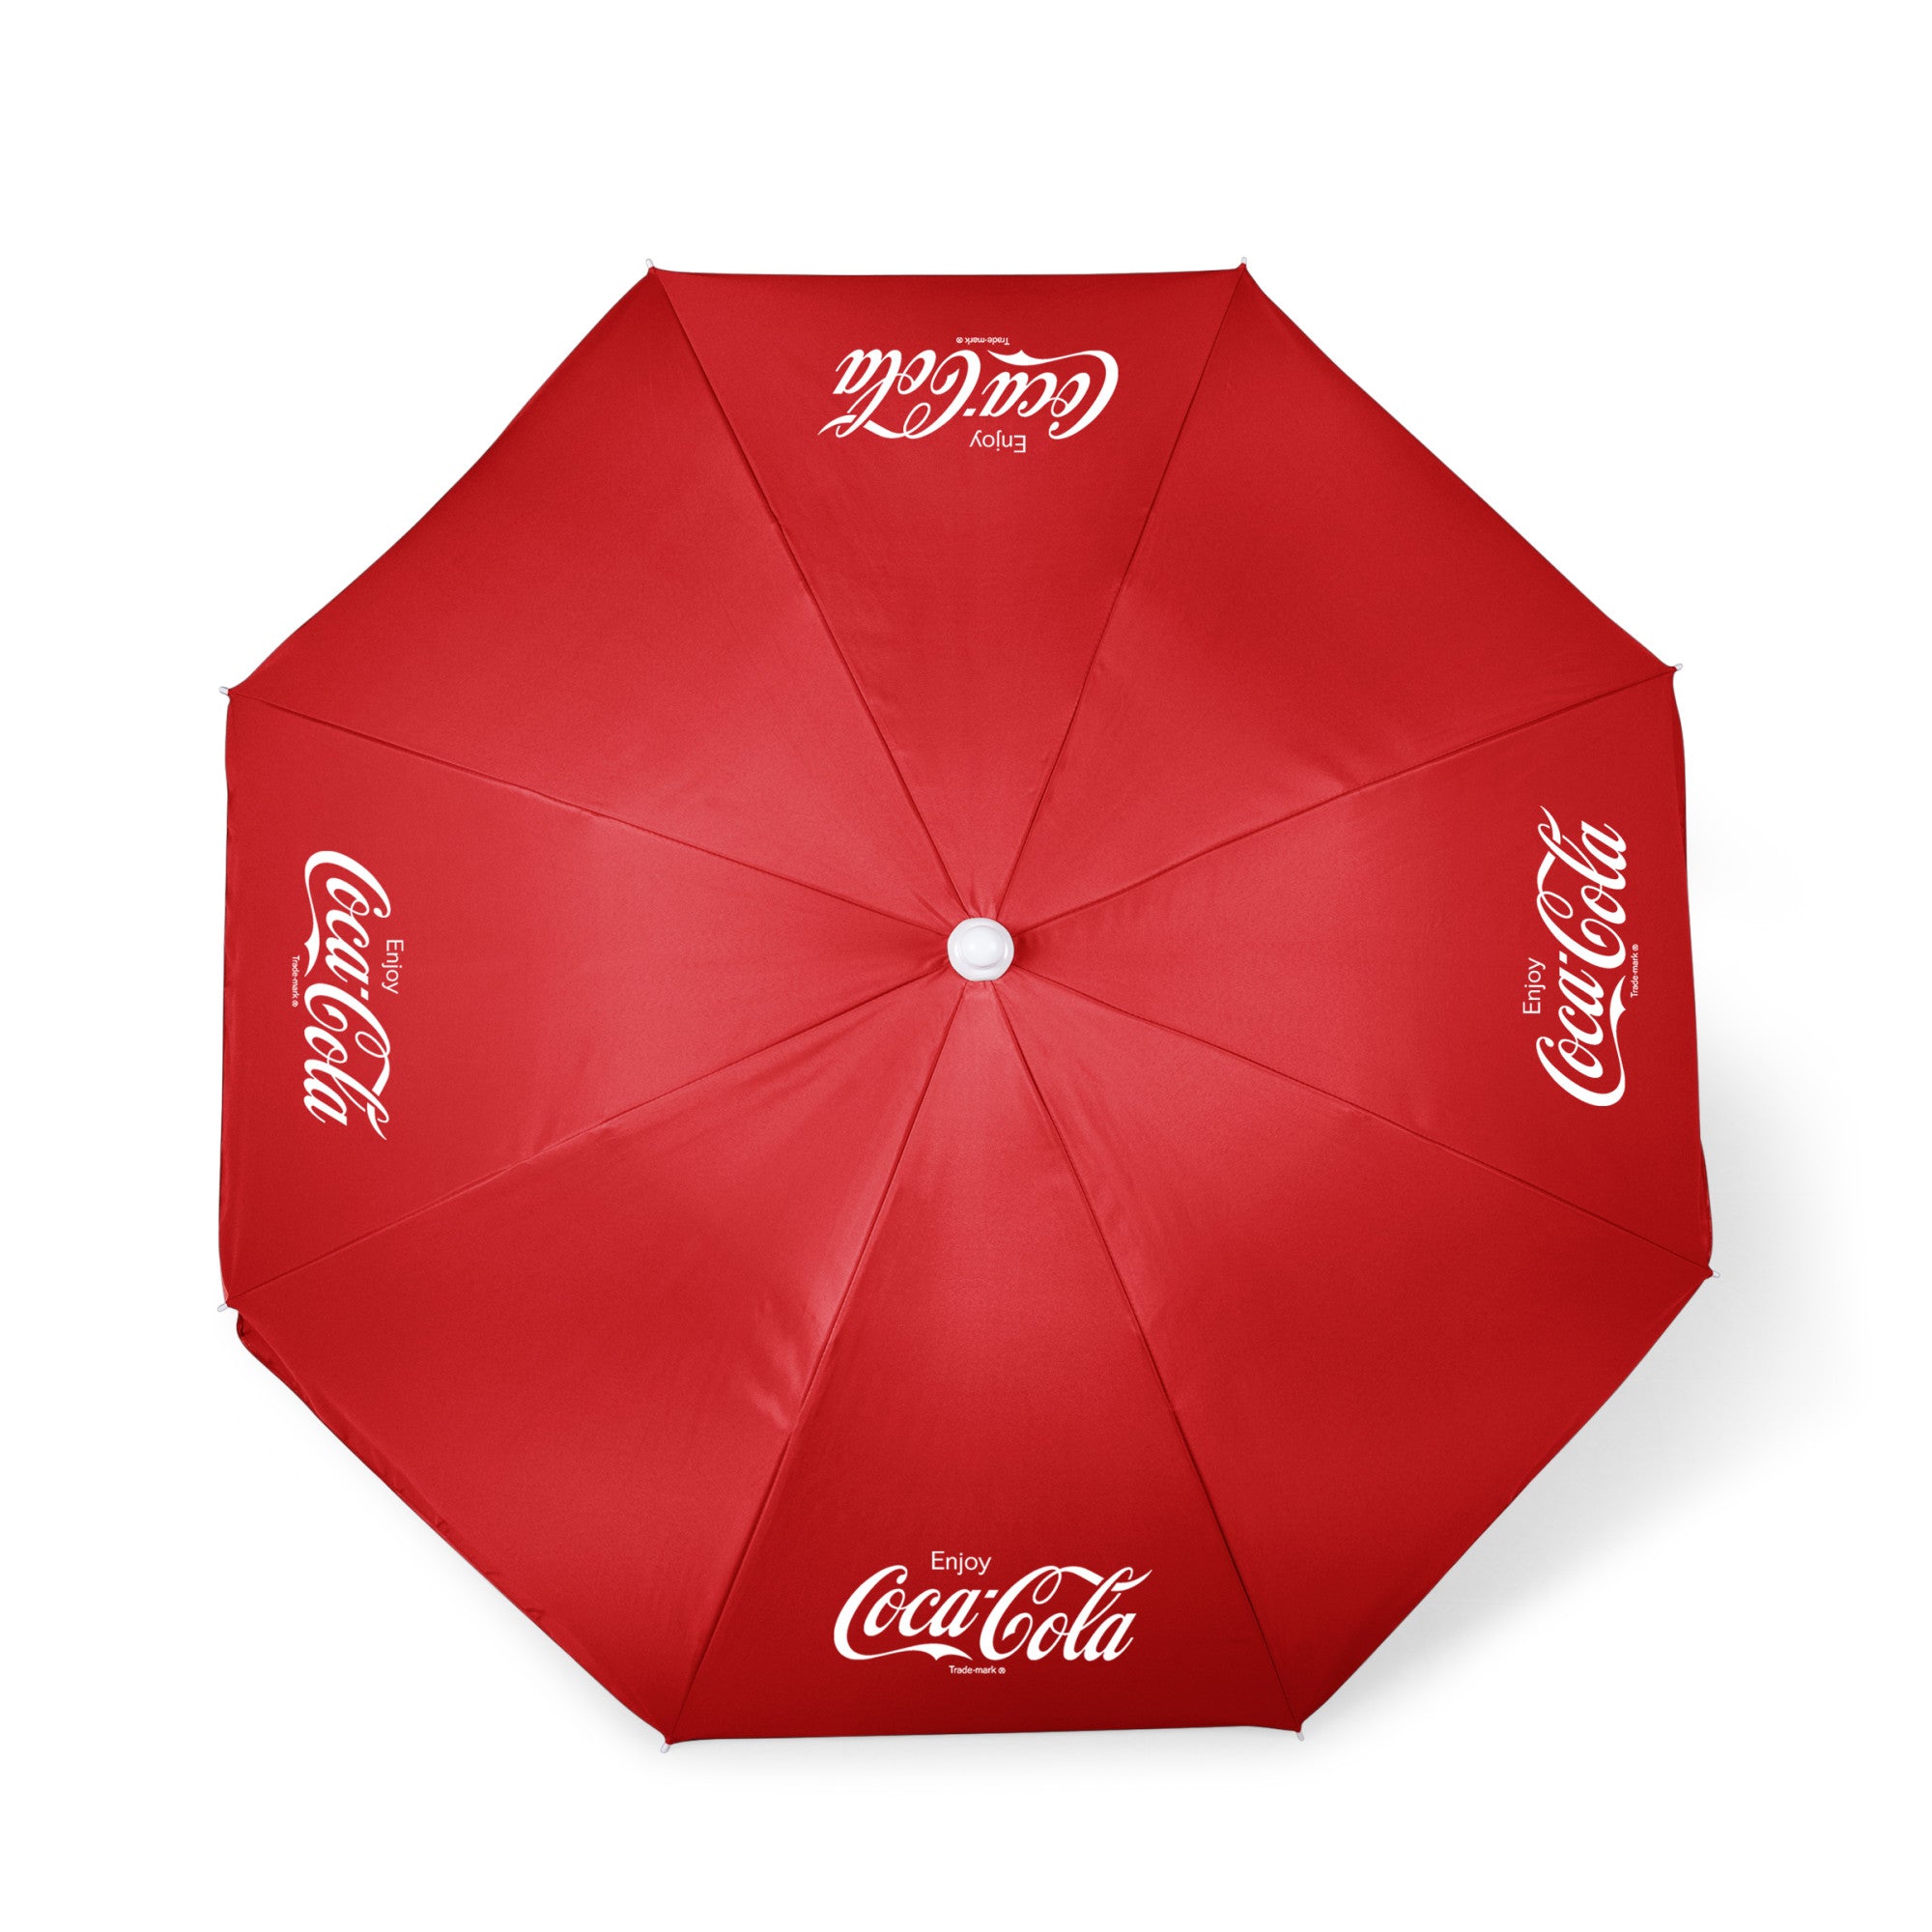 Coca-Cola Enjoy Coke - 5.5 Ft. Portable Beach Umbrella